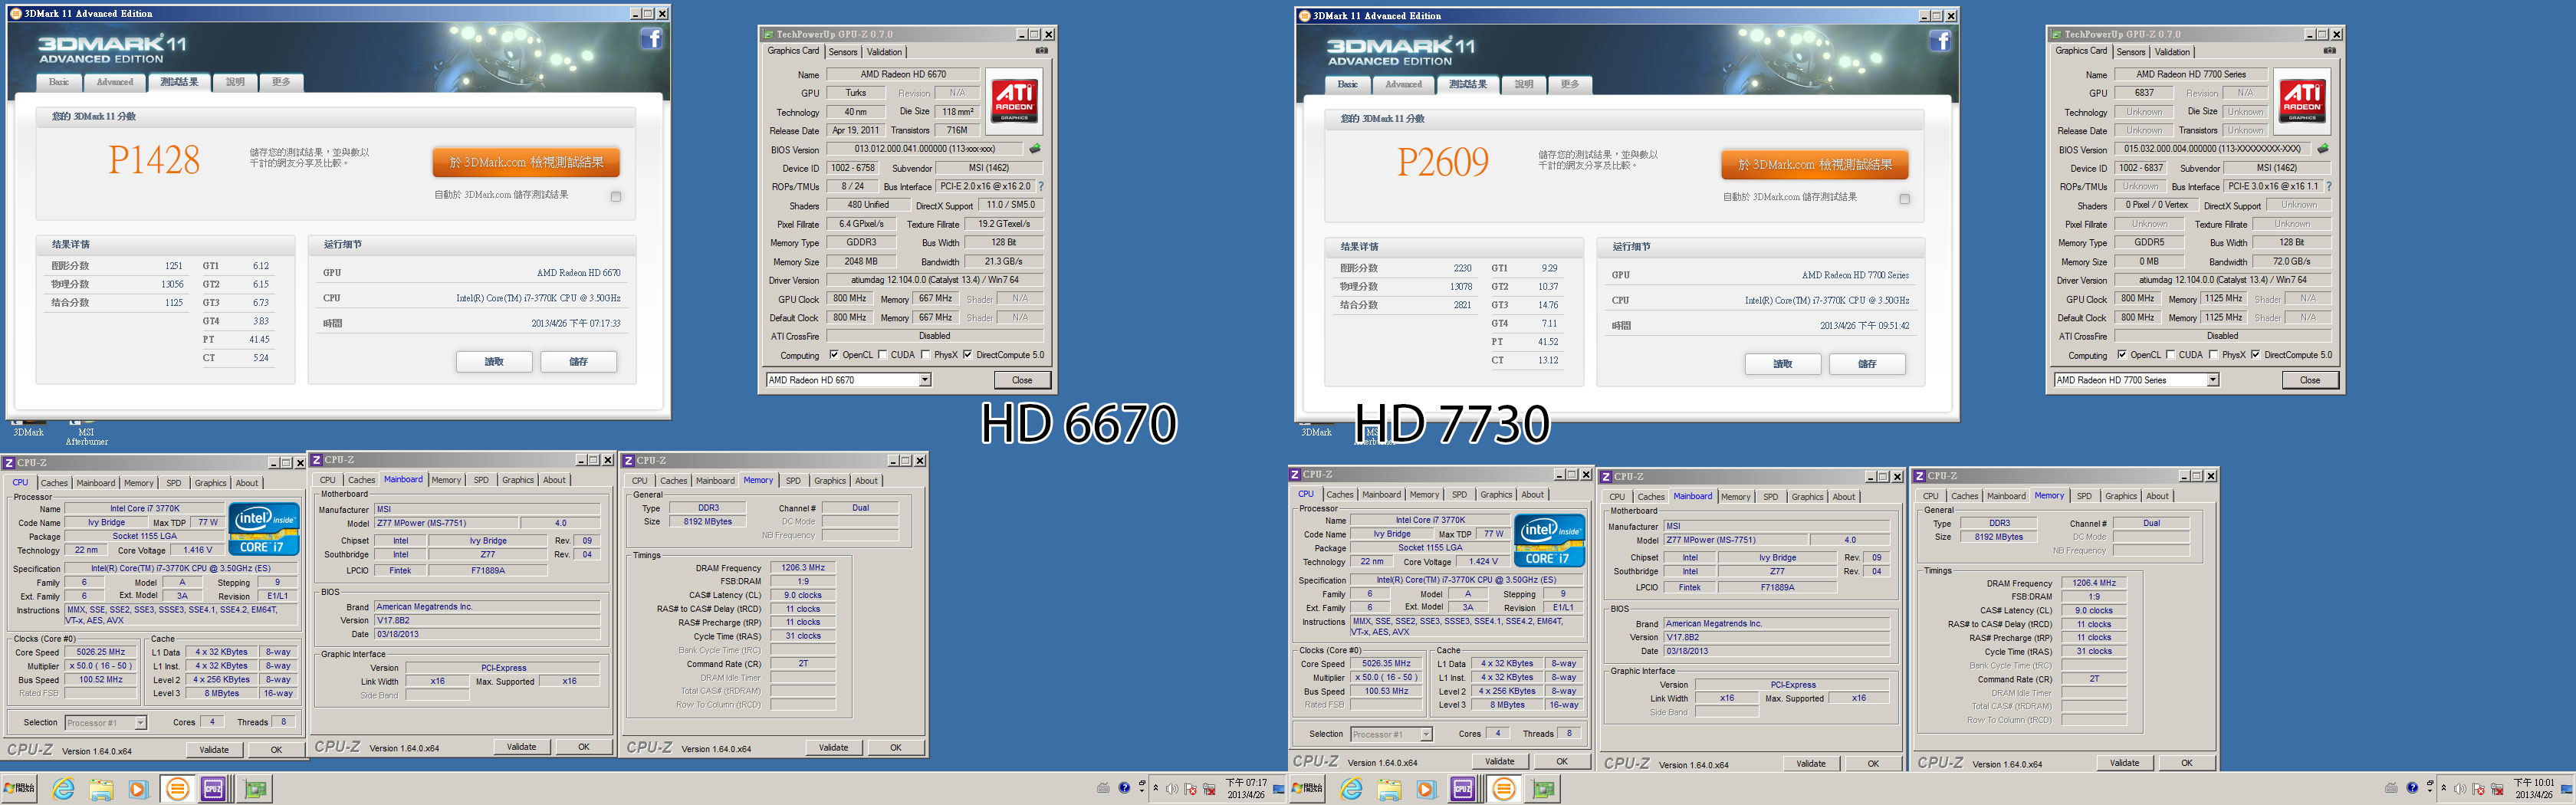 AMD připravuje Radeon HD 7730 jako konkurenci pro GT 640